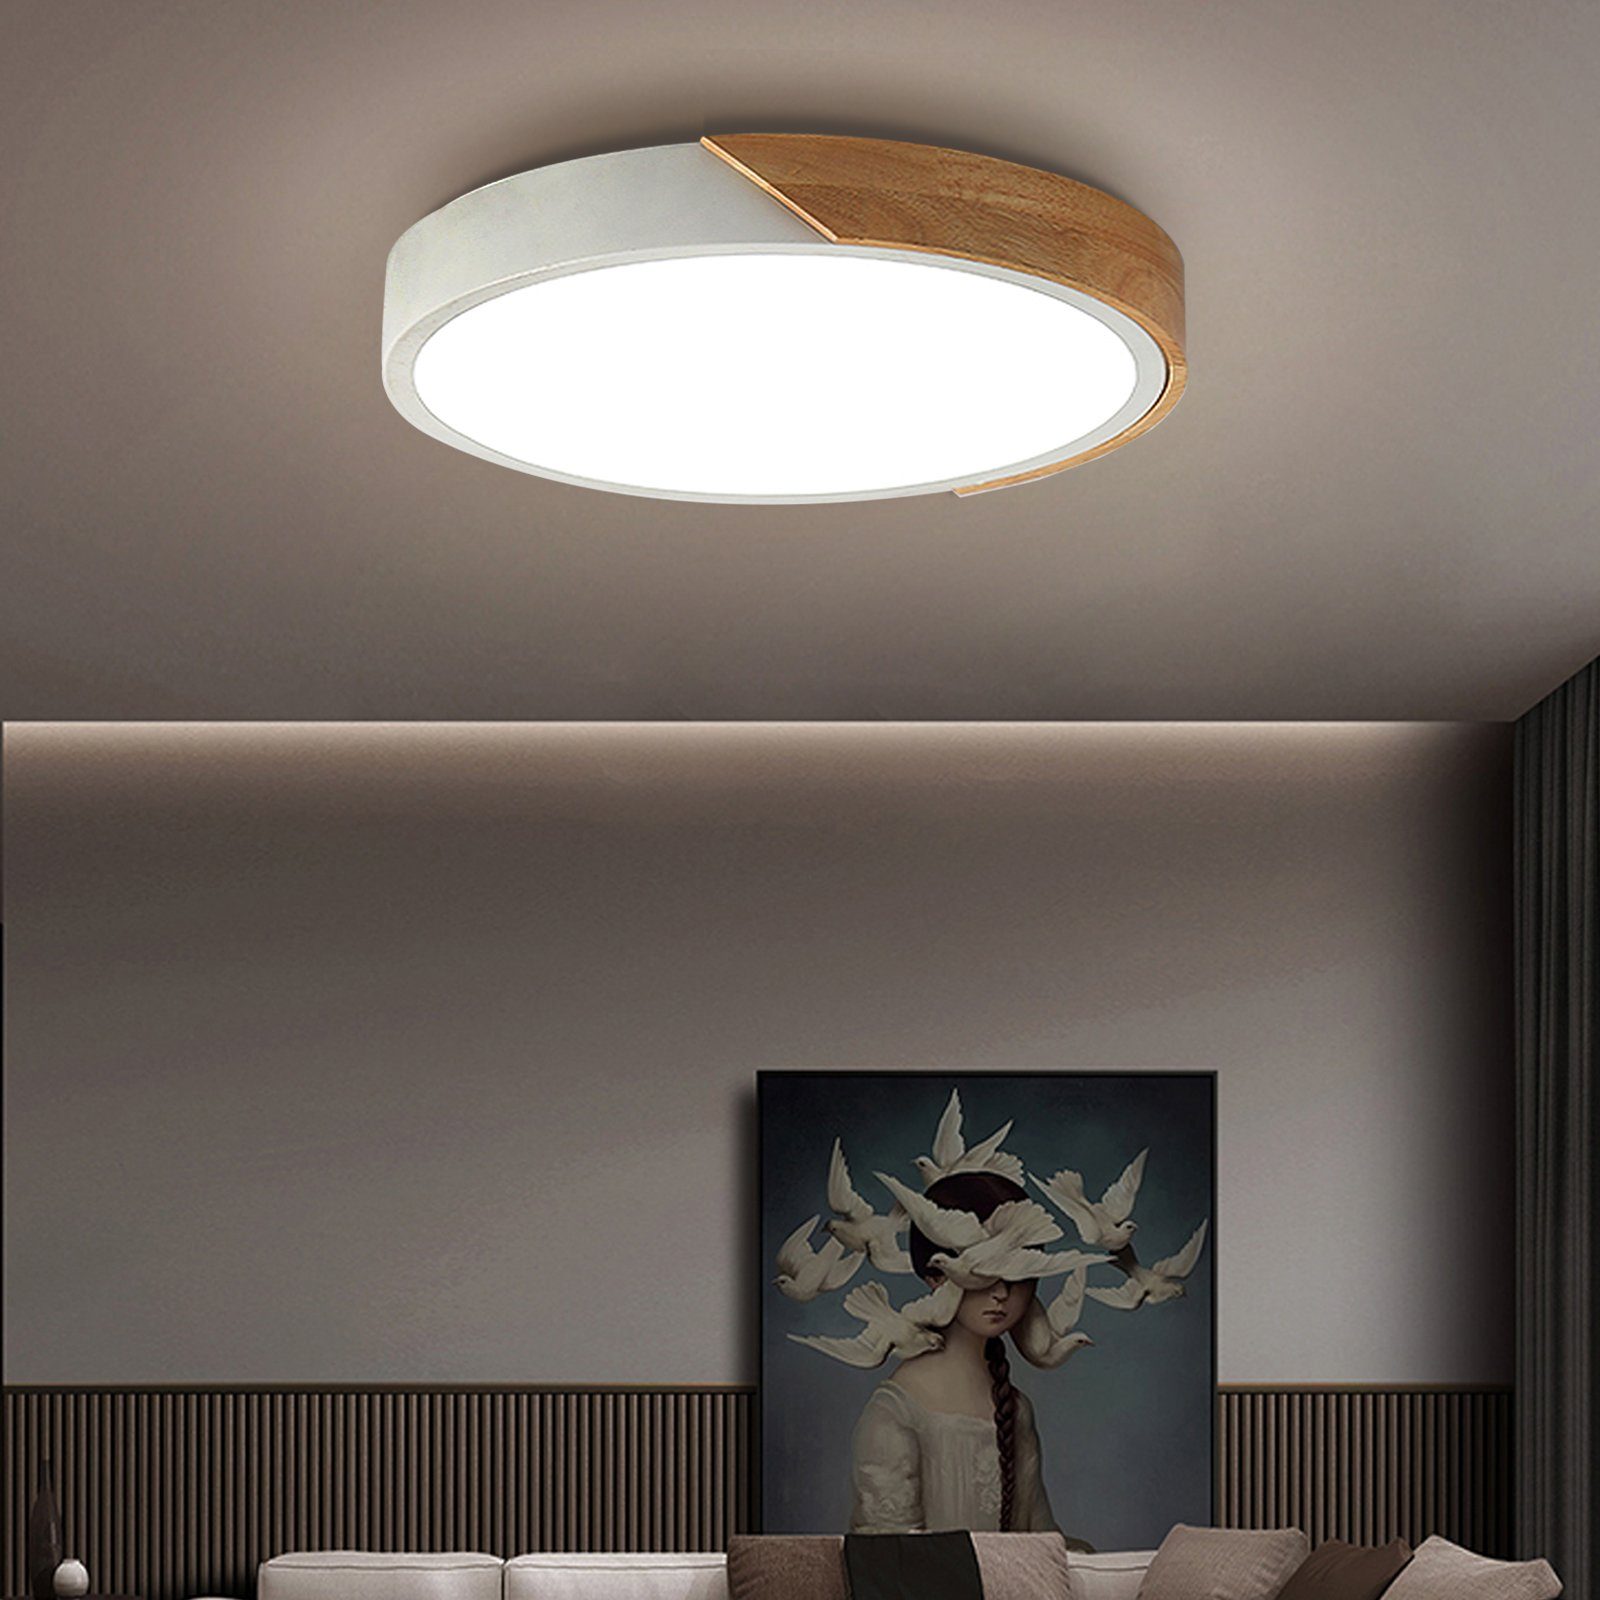 LED Decken Leuchten modern Flur Dielen Strahler Wohn Schlaf Zimmer Raum Lampen 